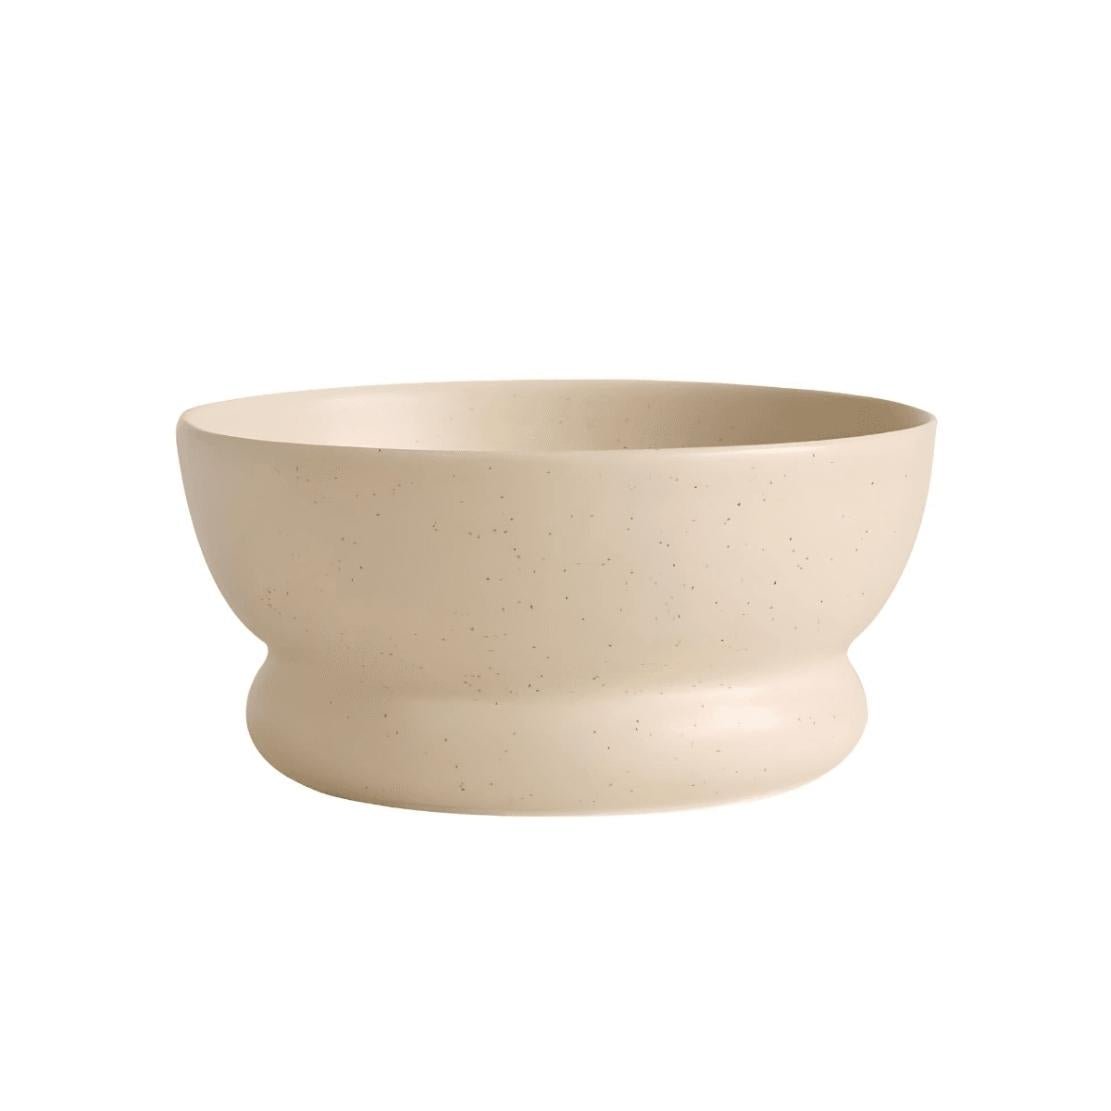 Beige, ceramic bowl